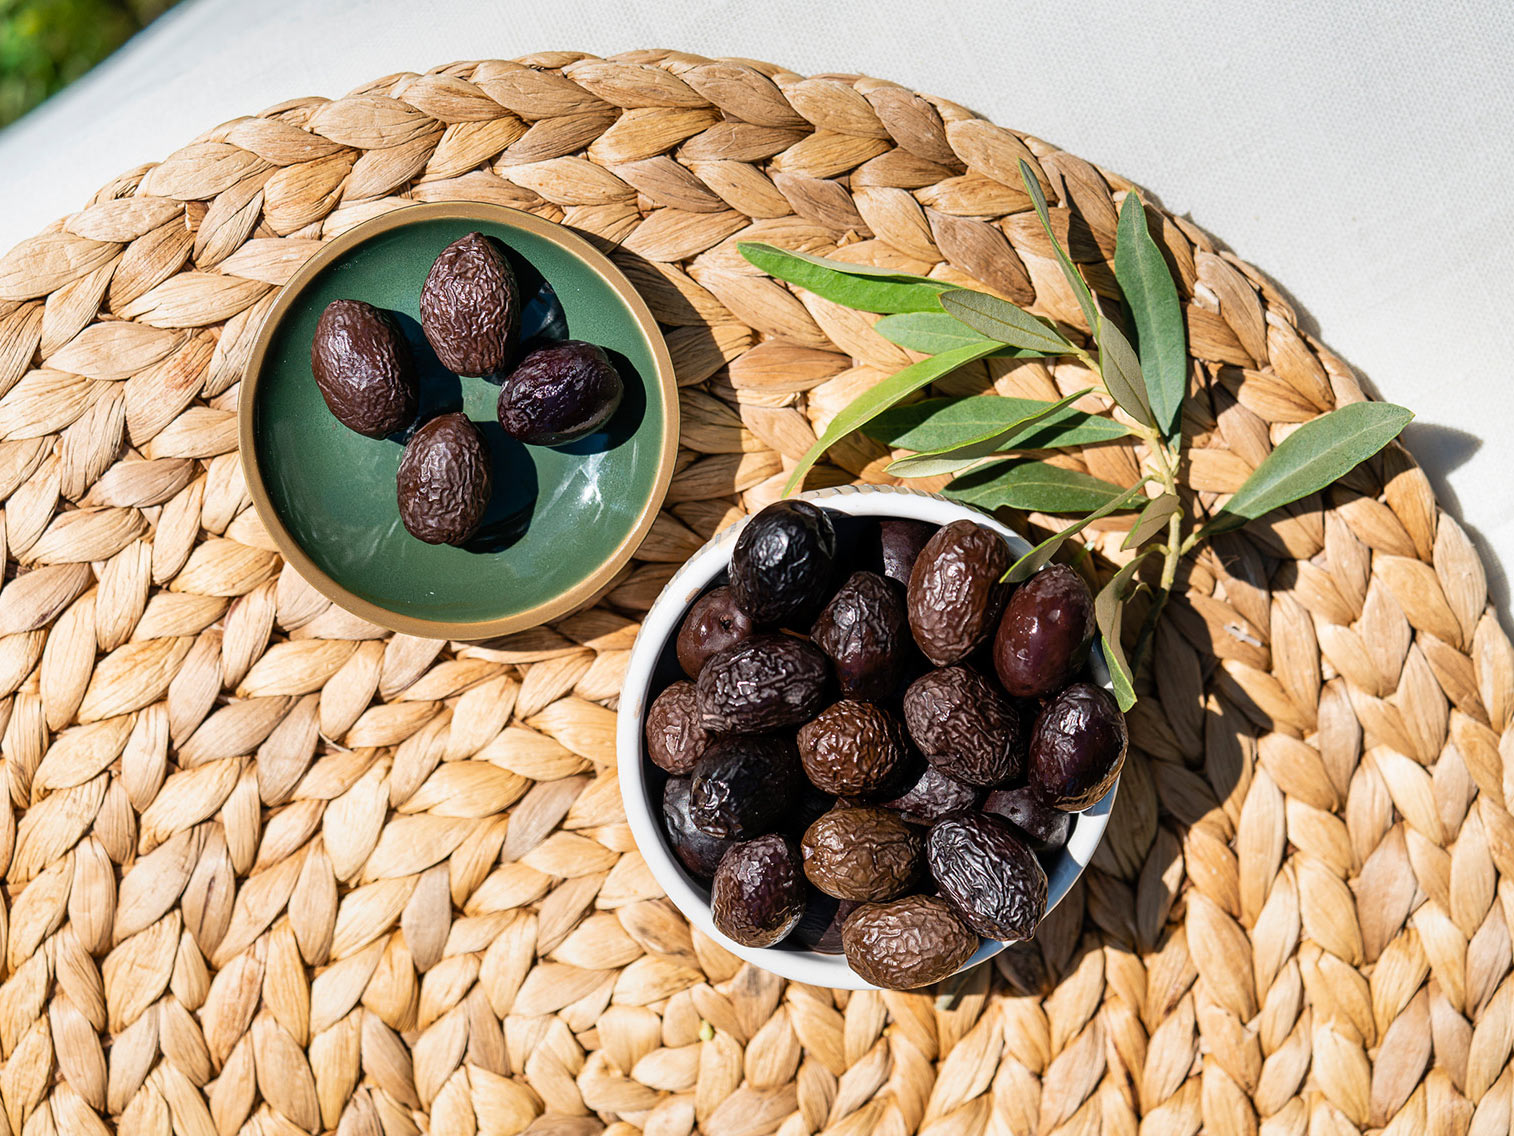 Tout savoir sur les olives !